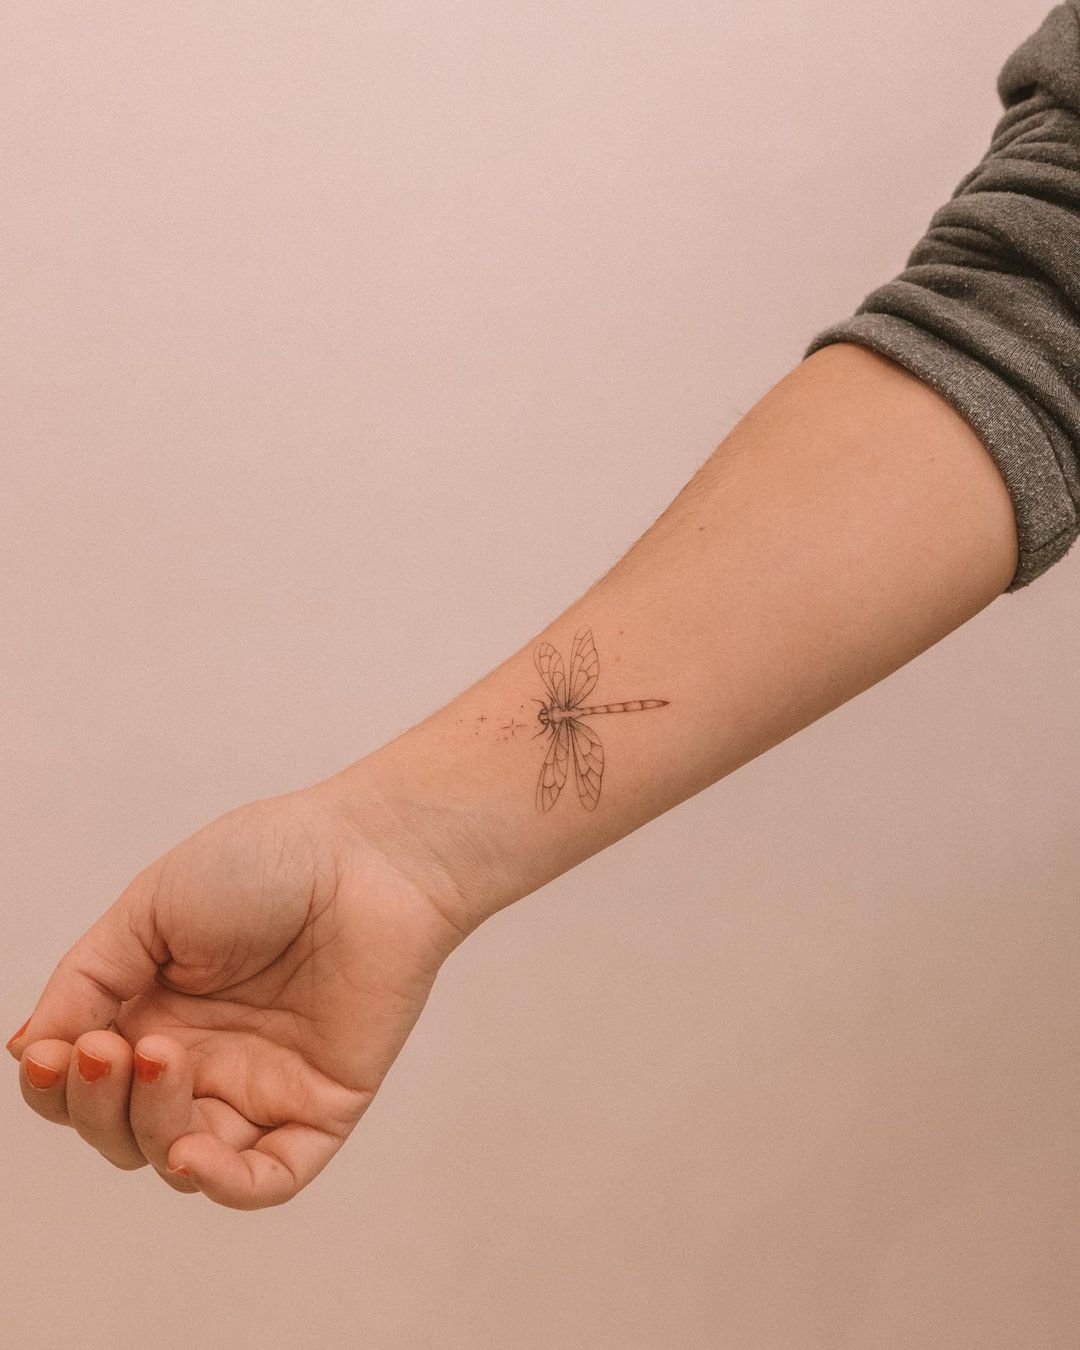 Dragon fly tattoo ideas by tattoorroom